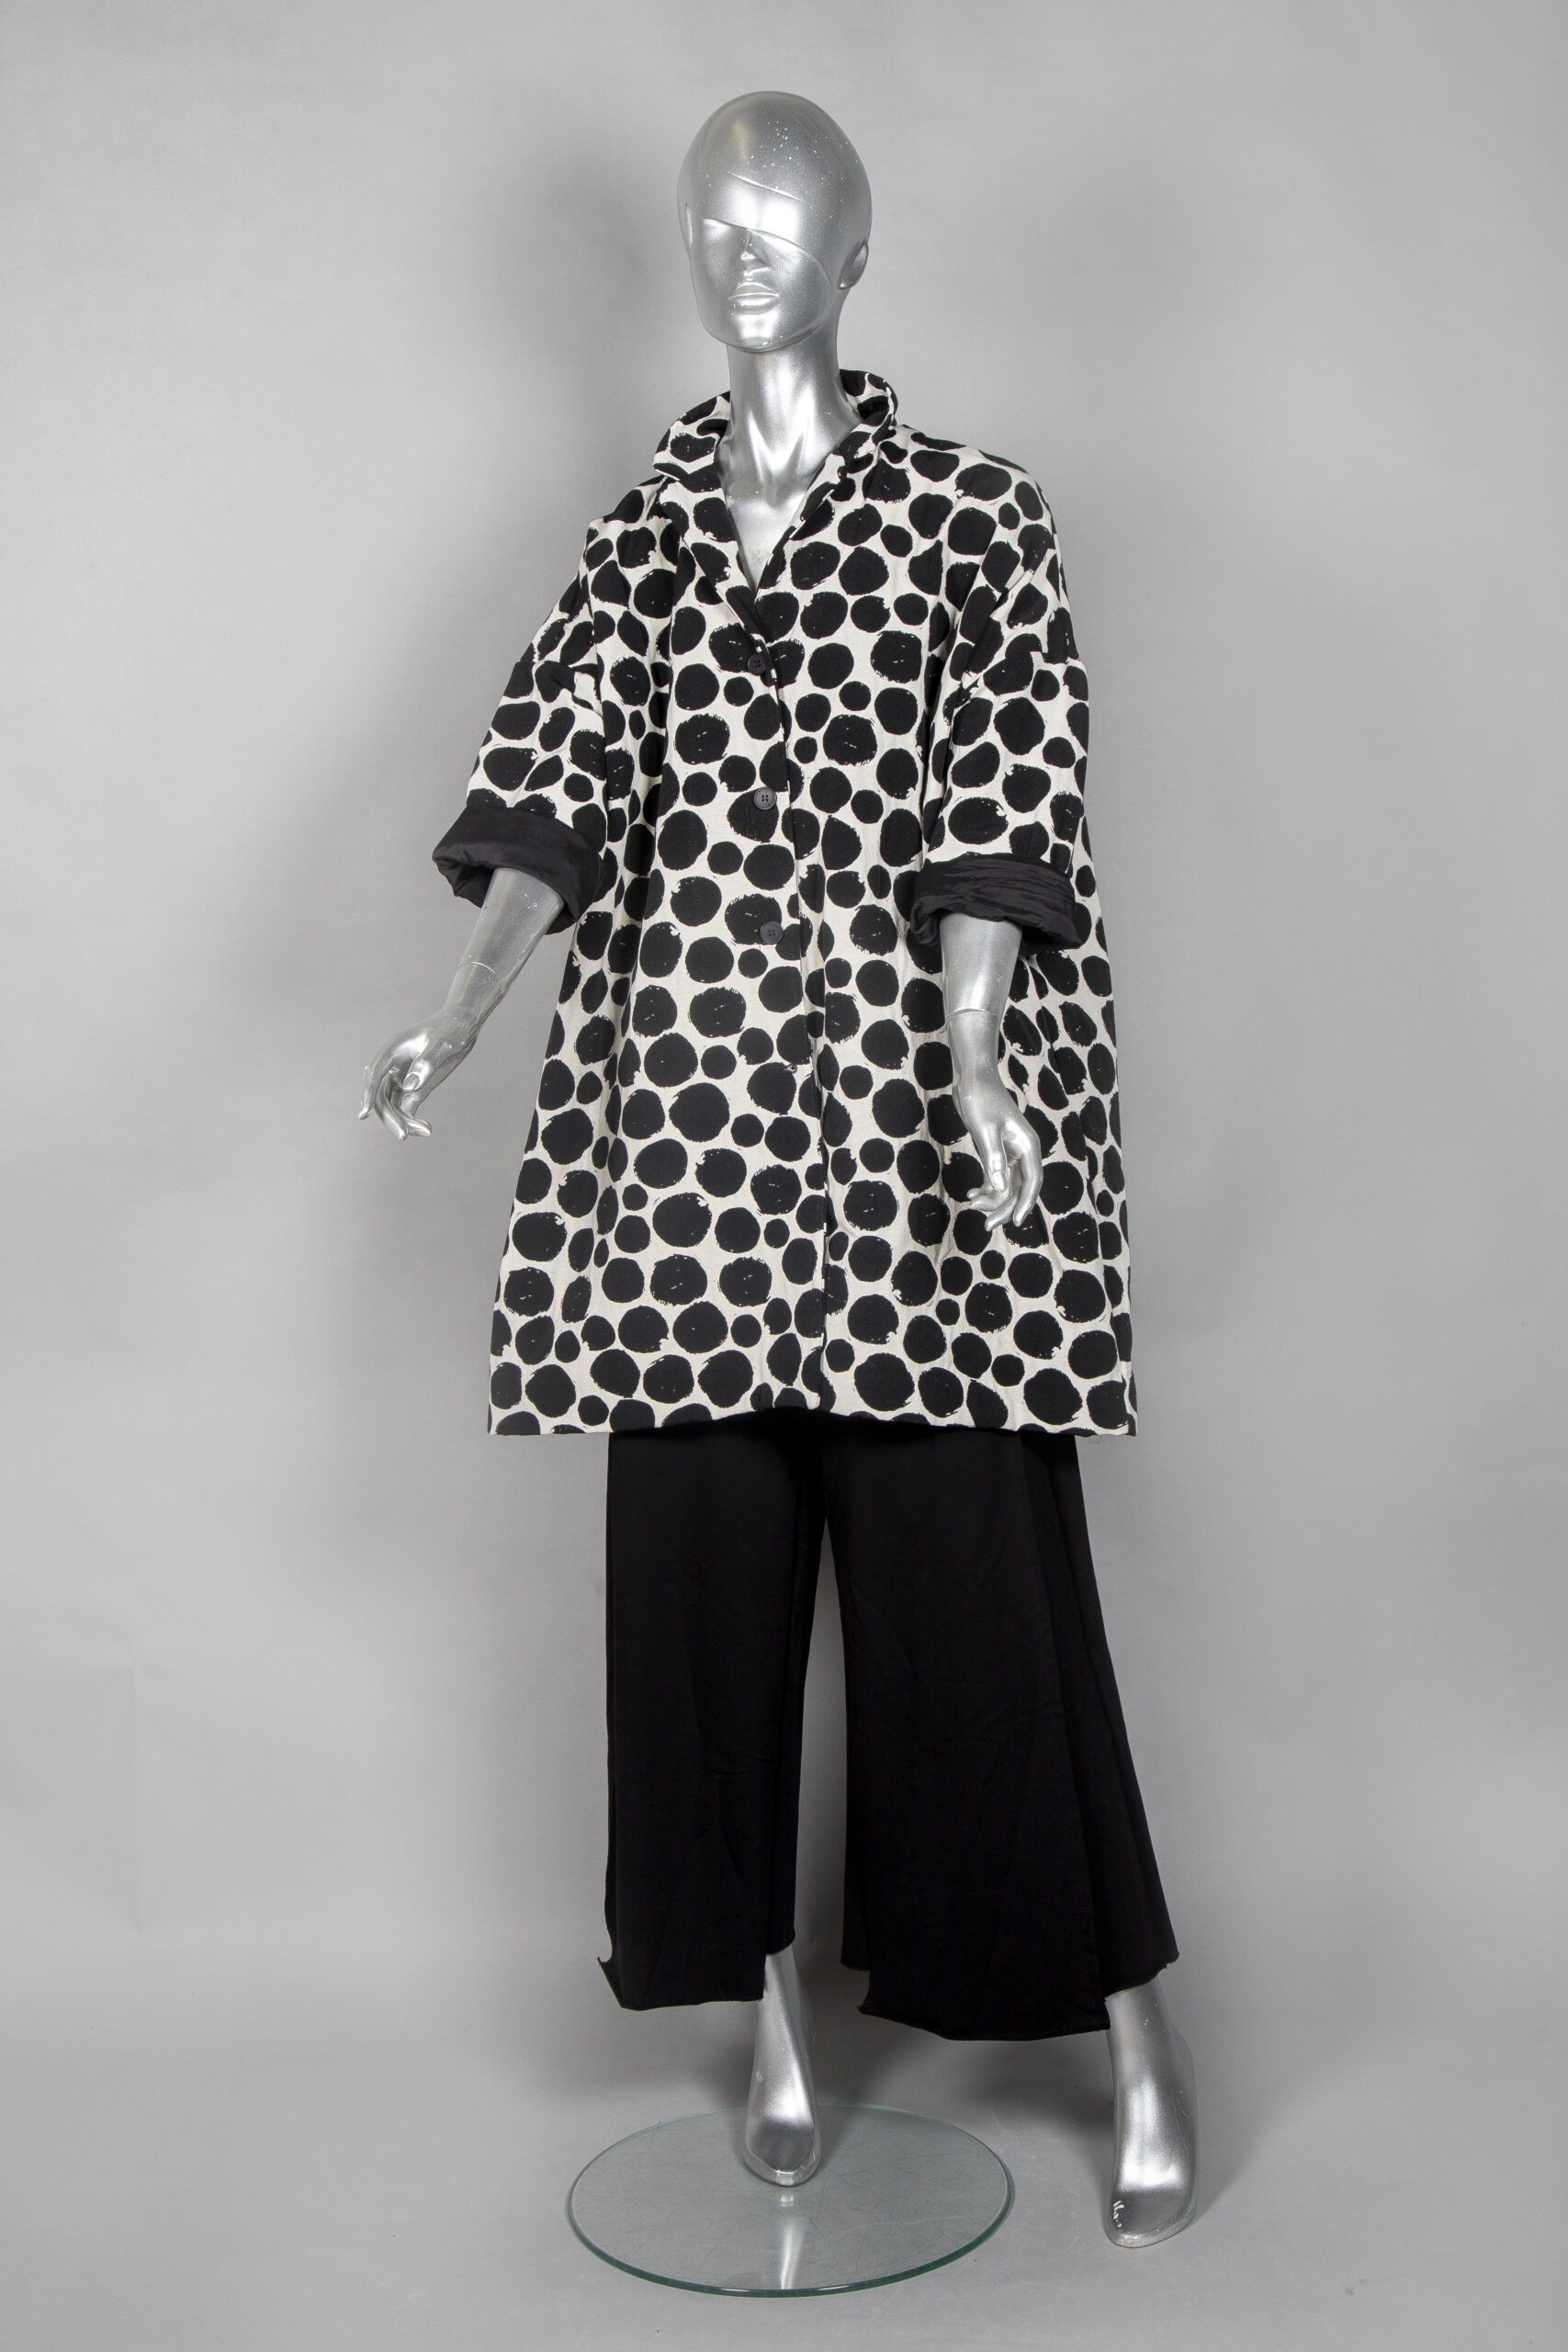 Chiara Oversized Linen Tunic/Dress